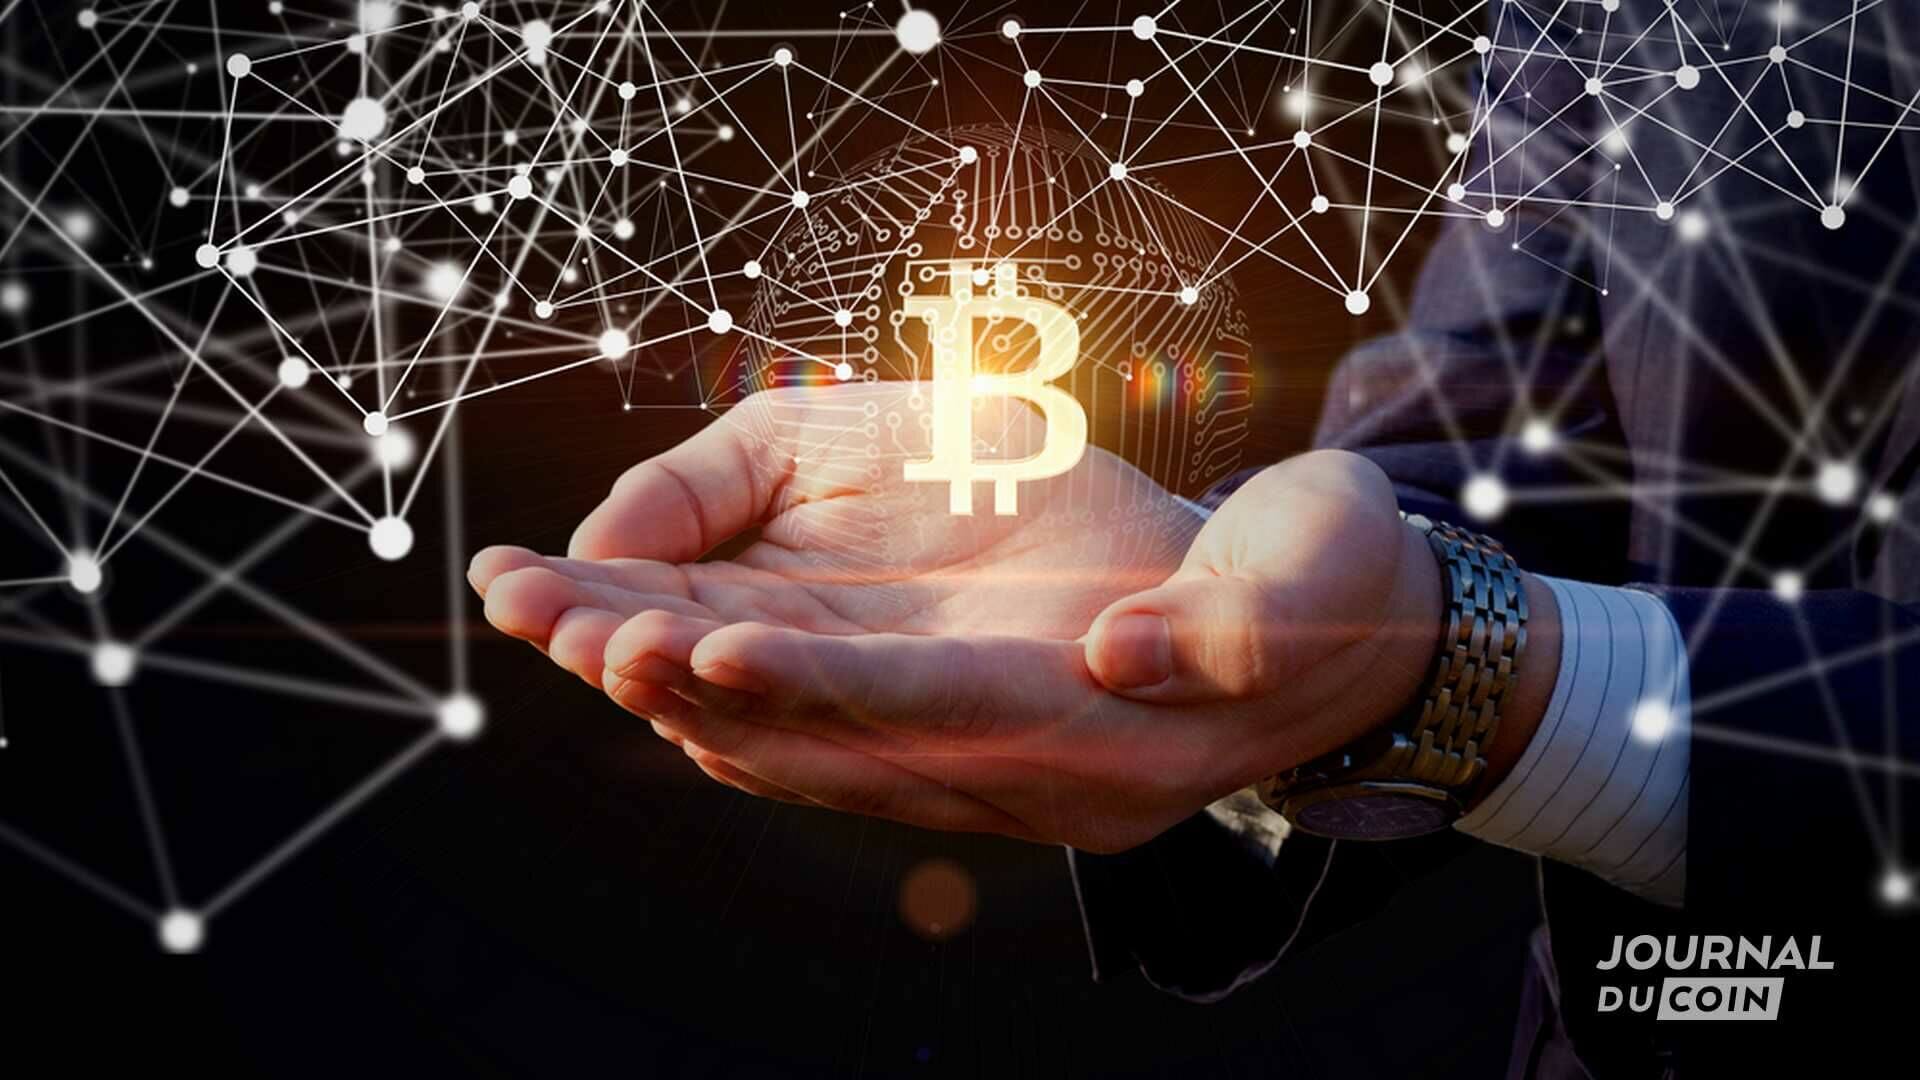 Request Finance va permettre aux entreprises de se faire payer en crypto-monnaies, teles que le bitcoin, l'ethereum, et bien d'autres